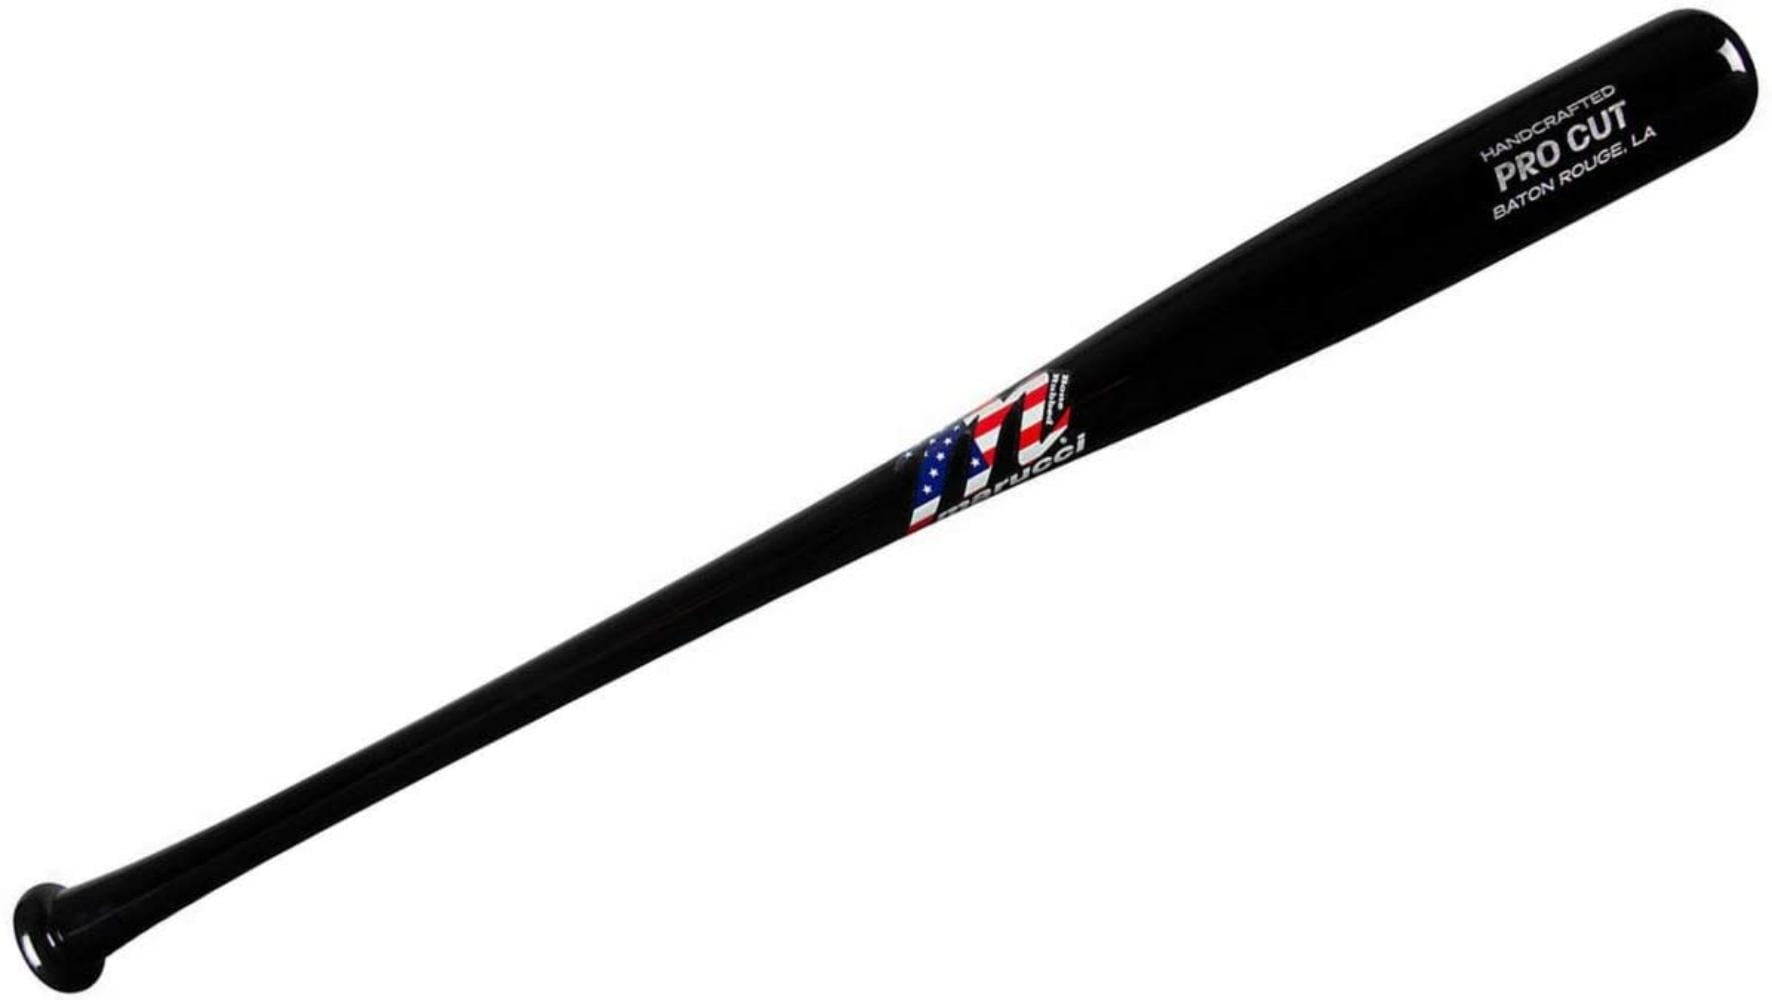 MBMPC-USA MBMPC-USA 34 inch Marucci Pro Cut USA Maple Wood Baseball Bat 